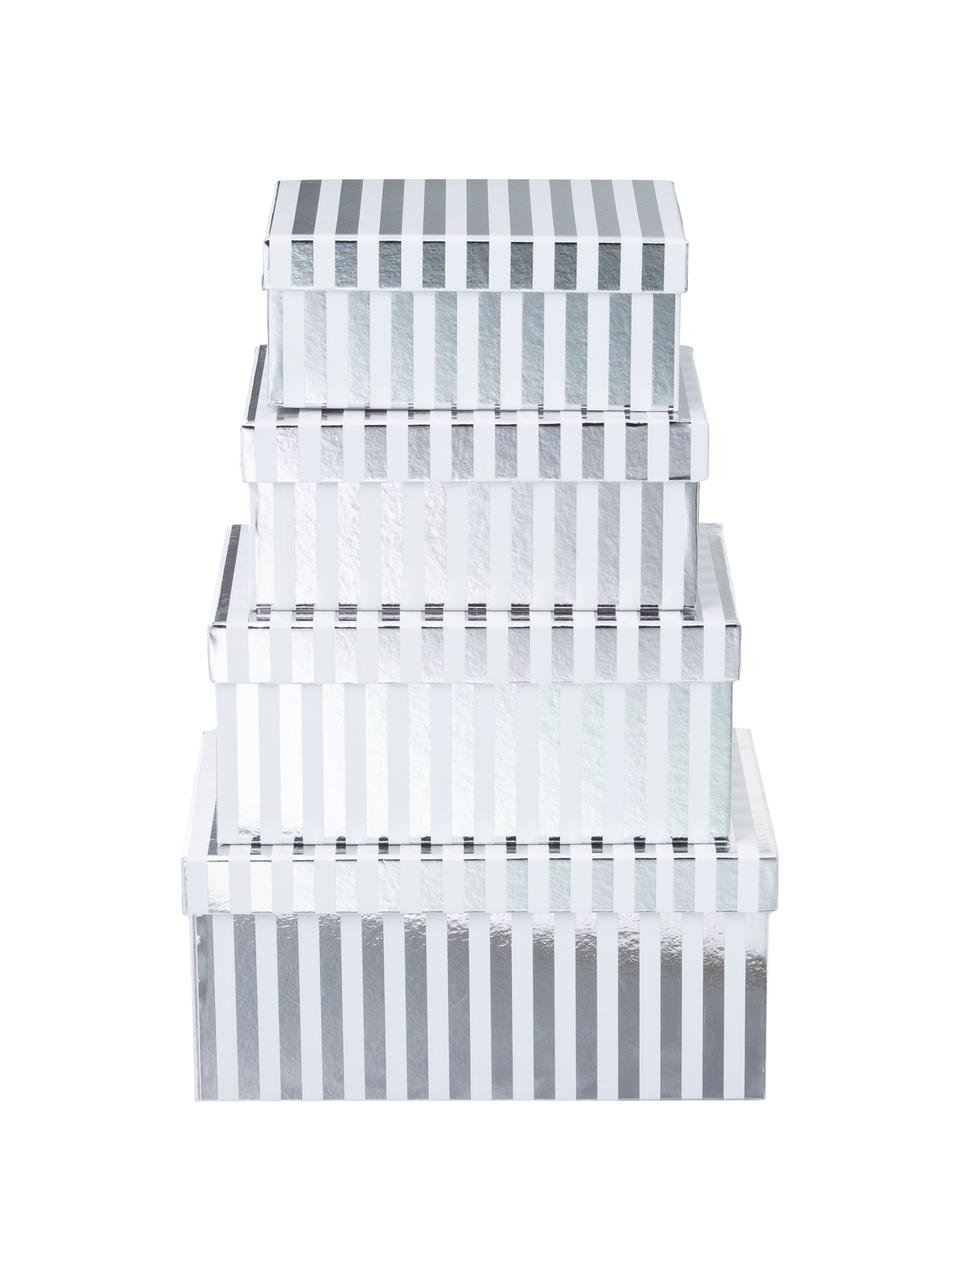 Set de cajas regalo Stripes, 4 pzas., Cartón, Blanco, plateado, Set de diferentes tamaños